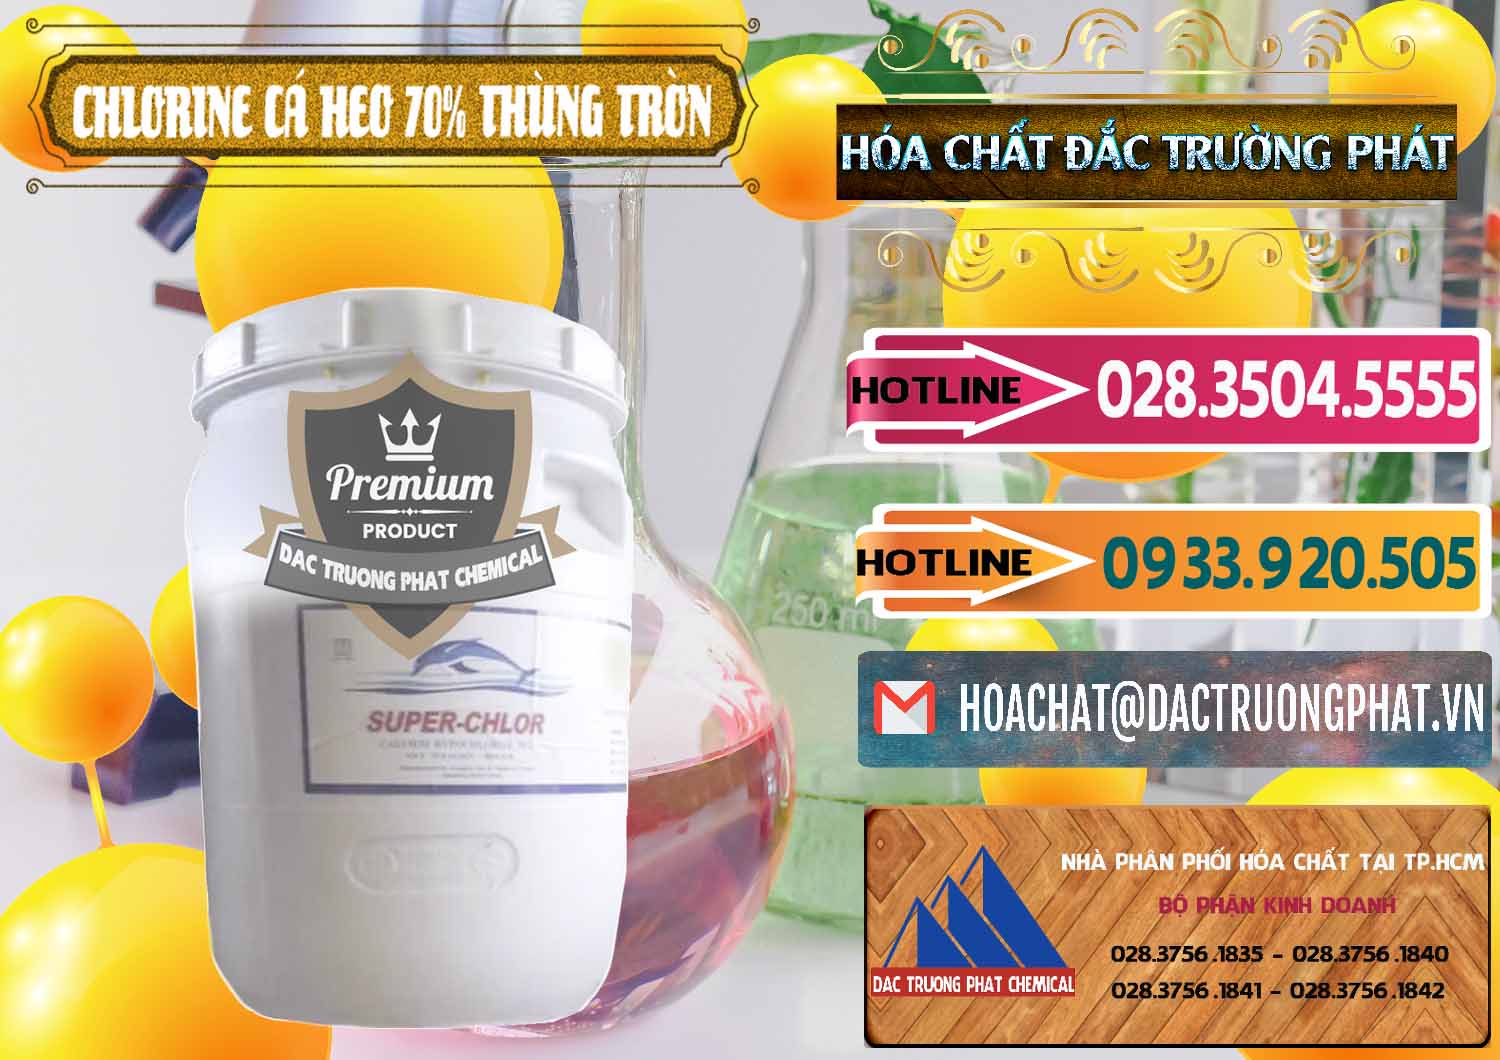 Cty bán & phân phối Clorin - Chlorine Cá Heo 70% Super Chlor Thùng Tròn Nắp Trắng Trung Quốc China - 0239 - Cty cung ứng ( phân phối ) hóa chất tại TP.HCM - dactruongphat.vn